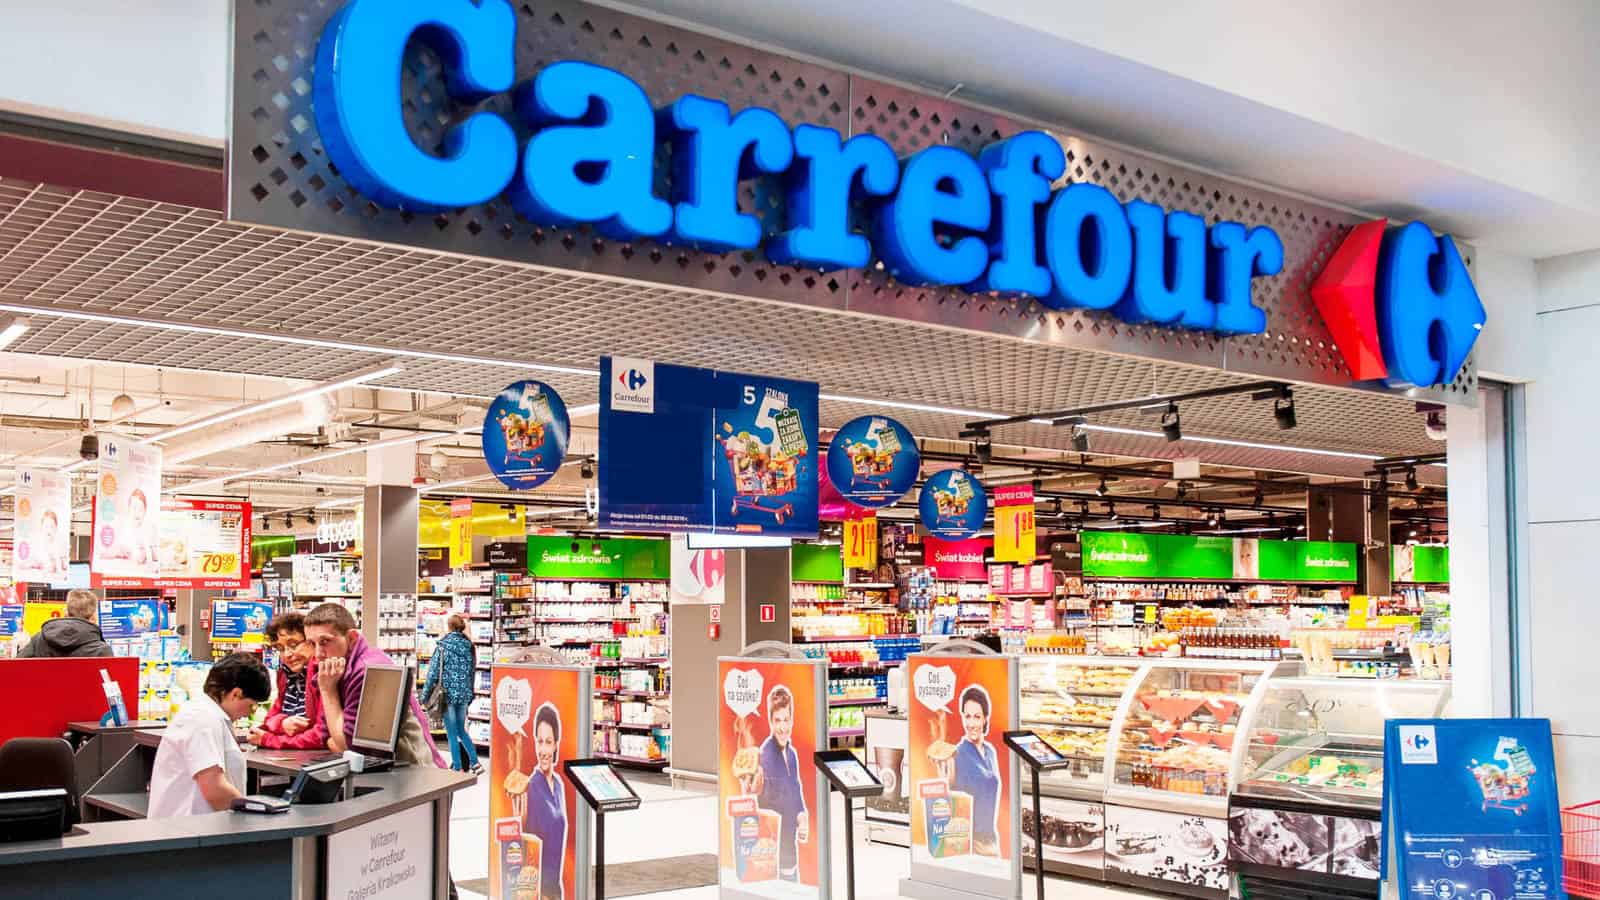 Carrefour España on X: Productos de alimentación, droguería y mucho más a 1  euro en hipermercados y carrefour.es    / X